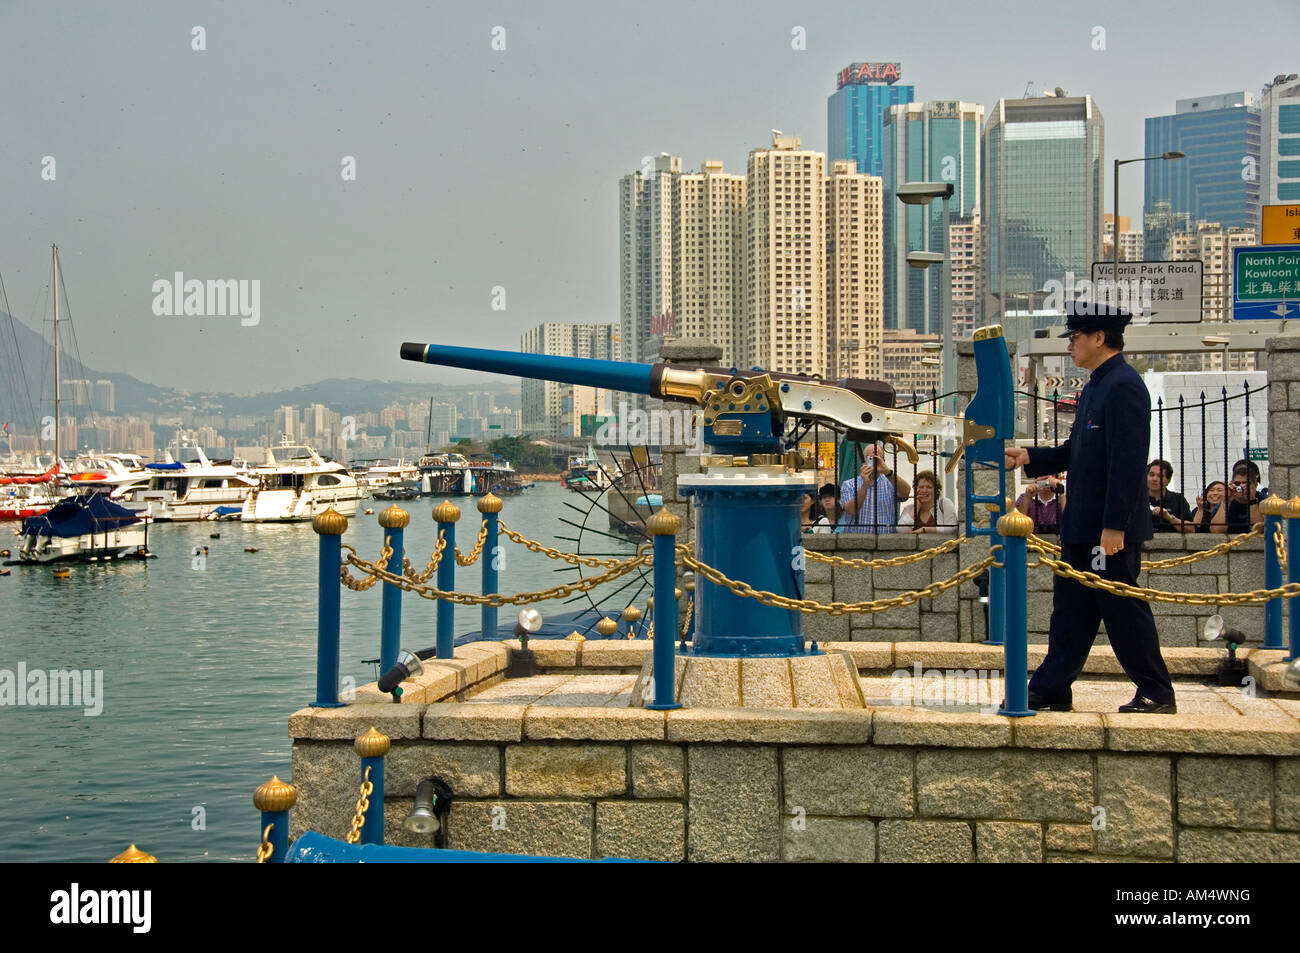 Firing of the Noonday gun, Causeway Bay, Hong Kong Island, Hong Kong, China, Asia Stock Photo